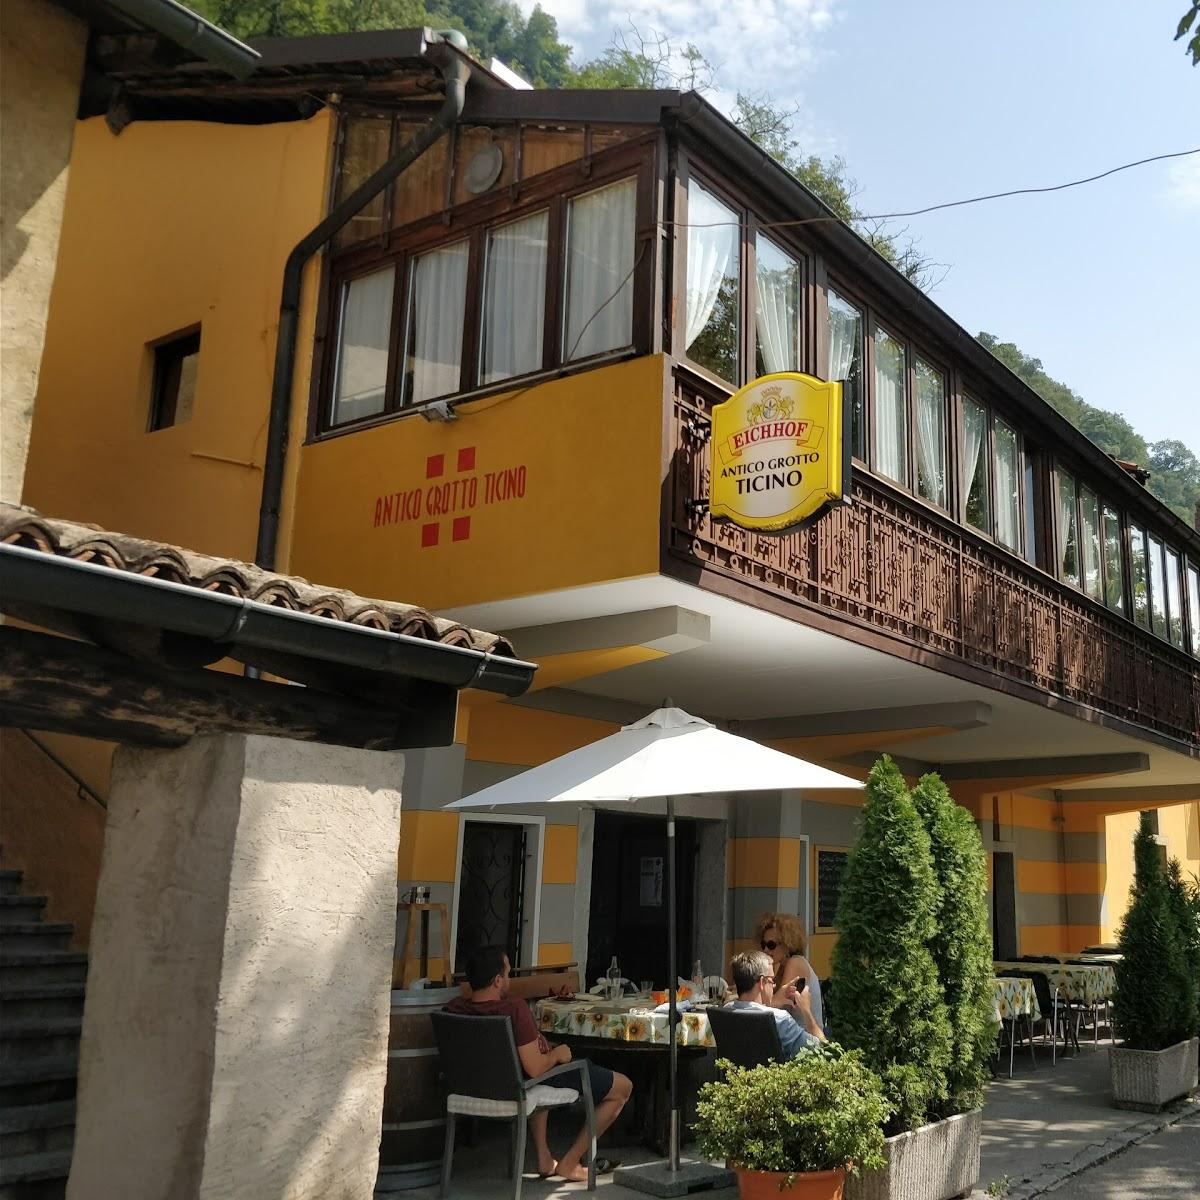 Restaurant "Antico Grotto Ticino" in Mendrisio